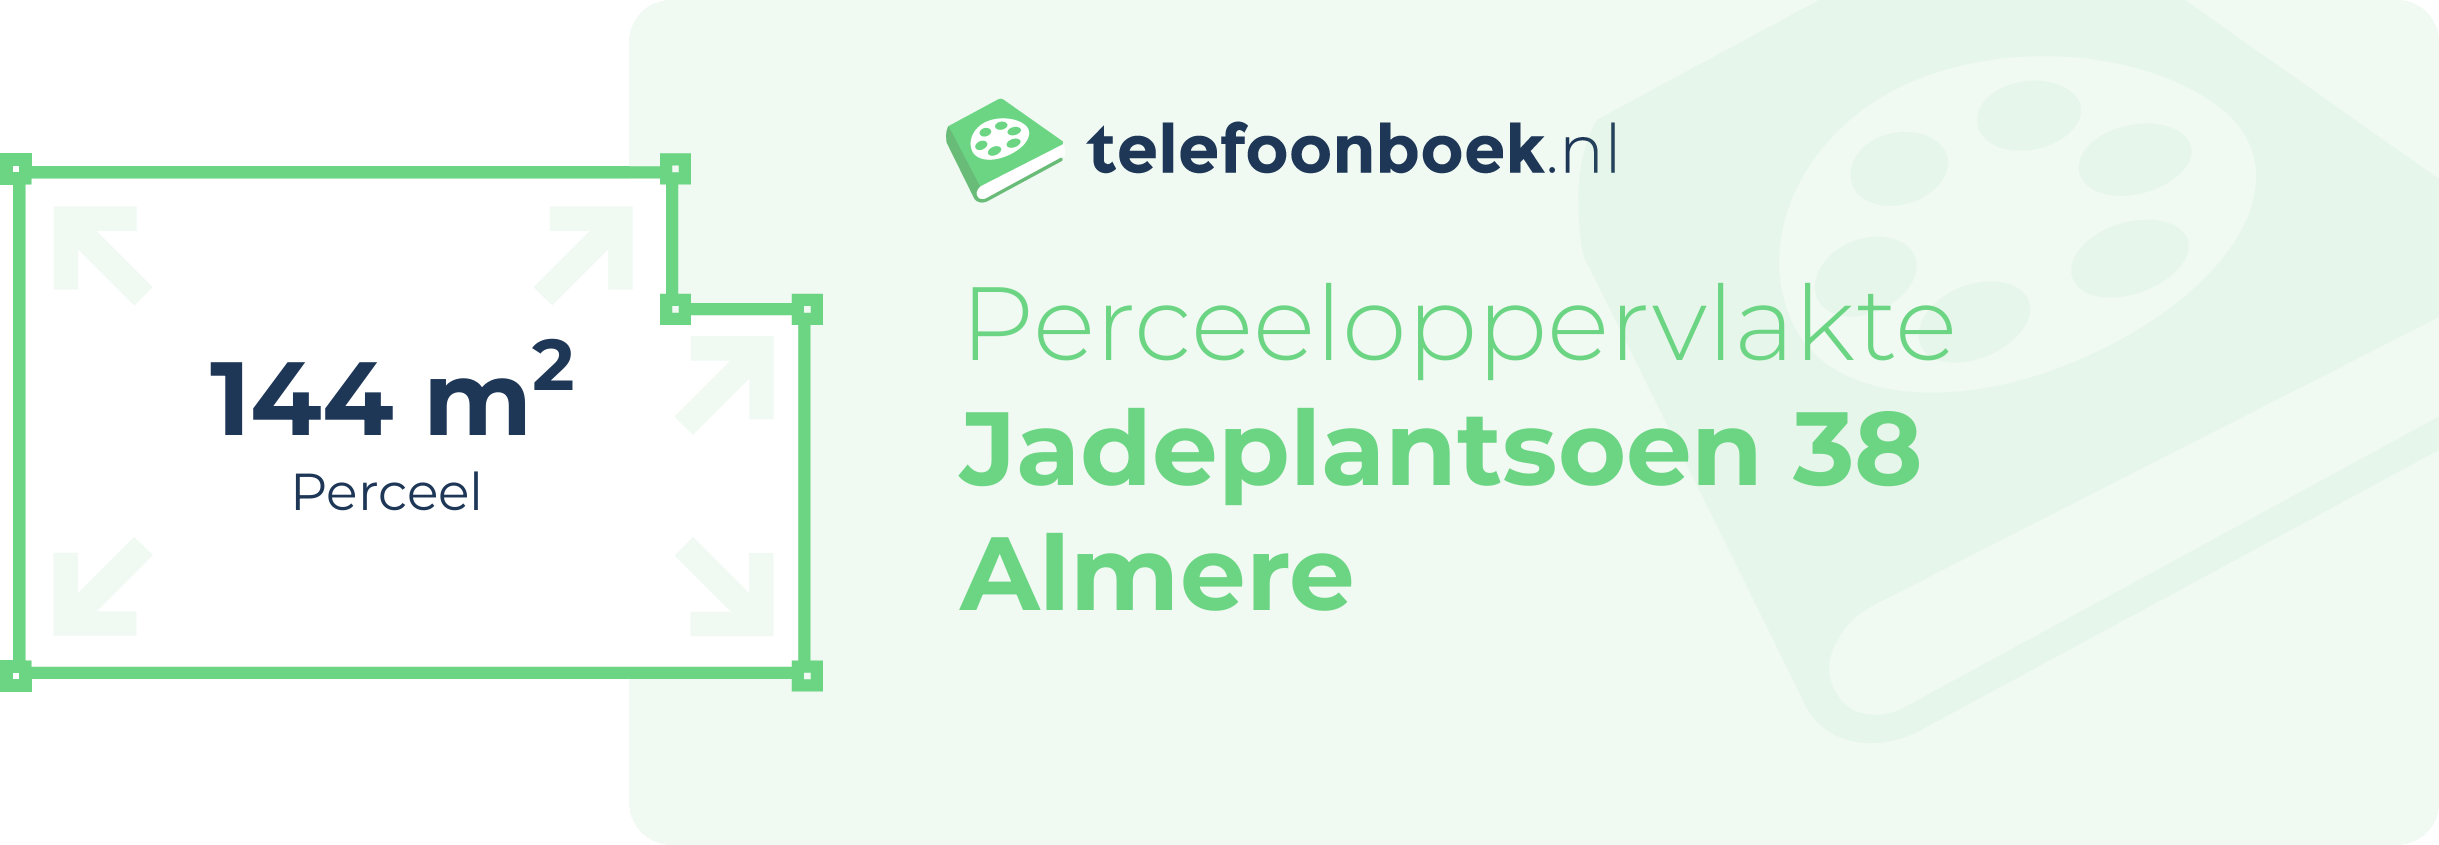 Perceeloppervlakte Jadeplantsoen 38 Almere